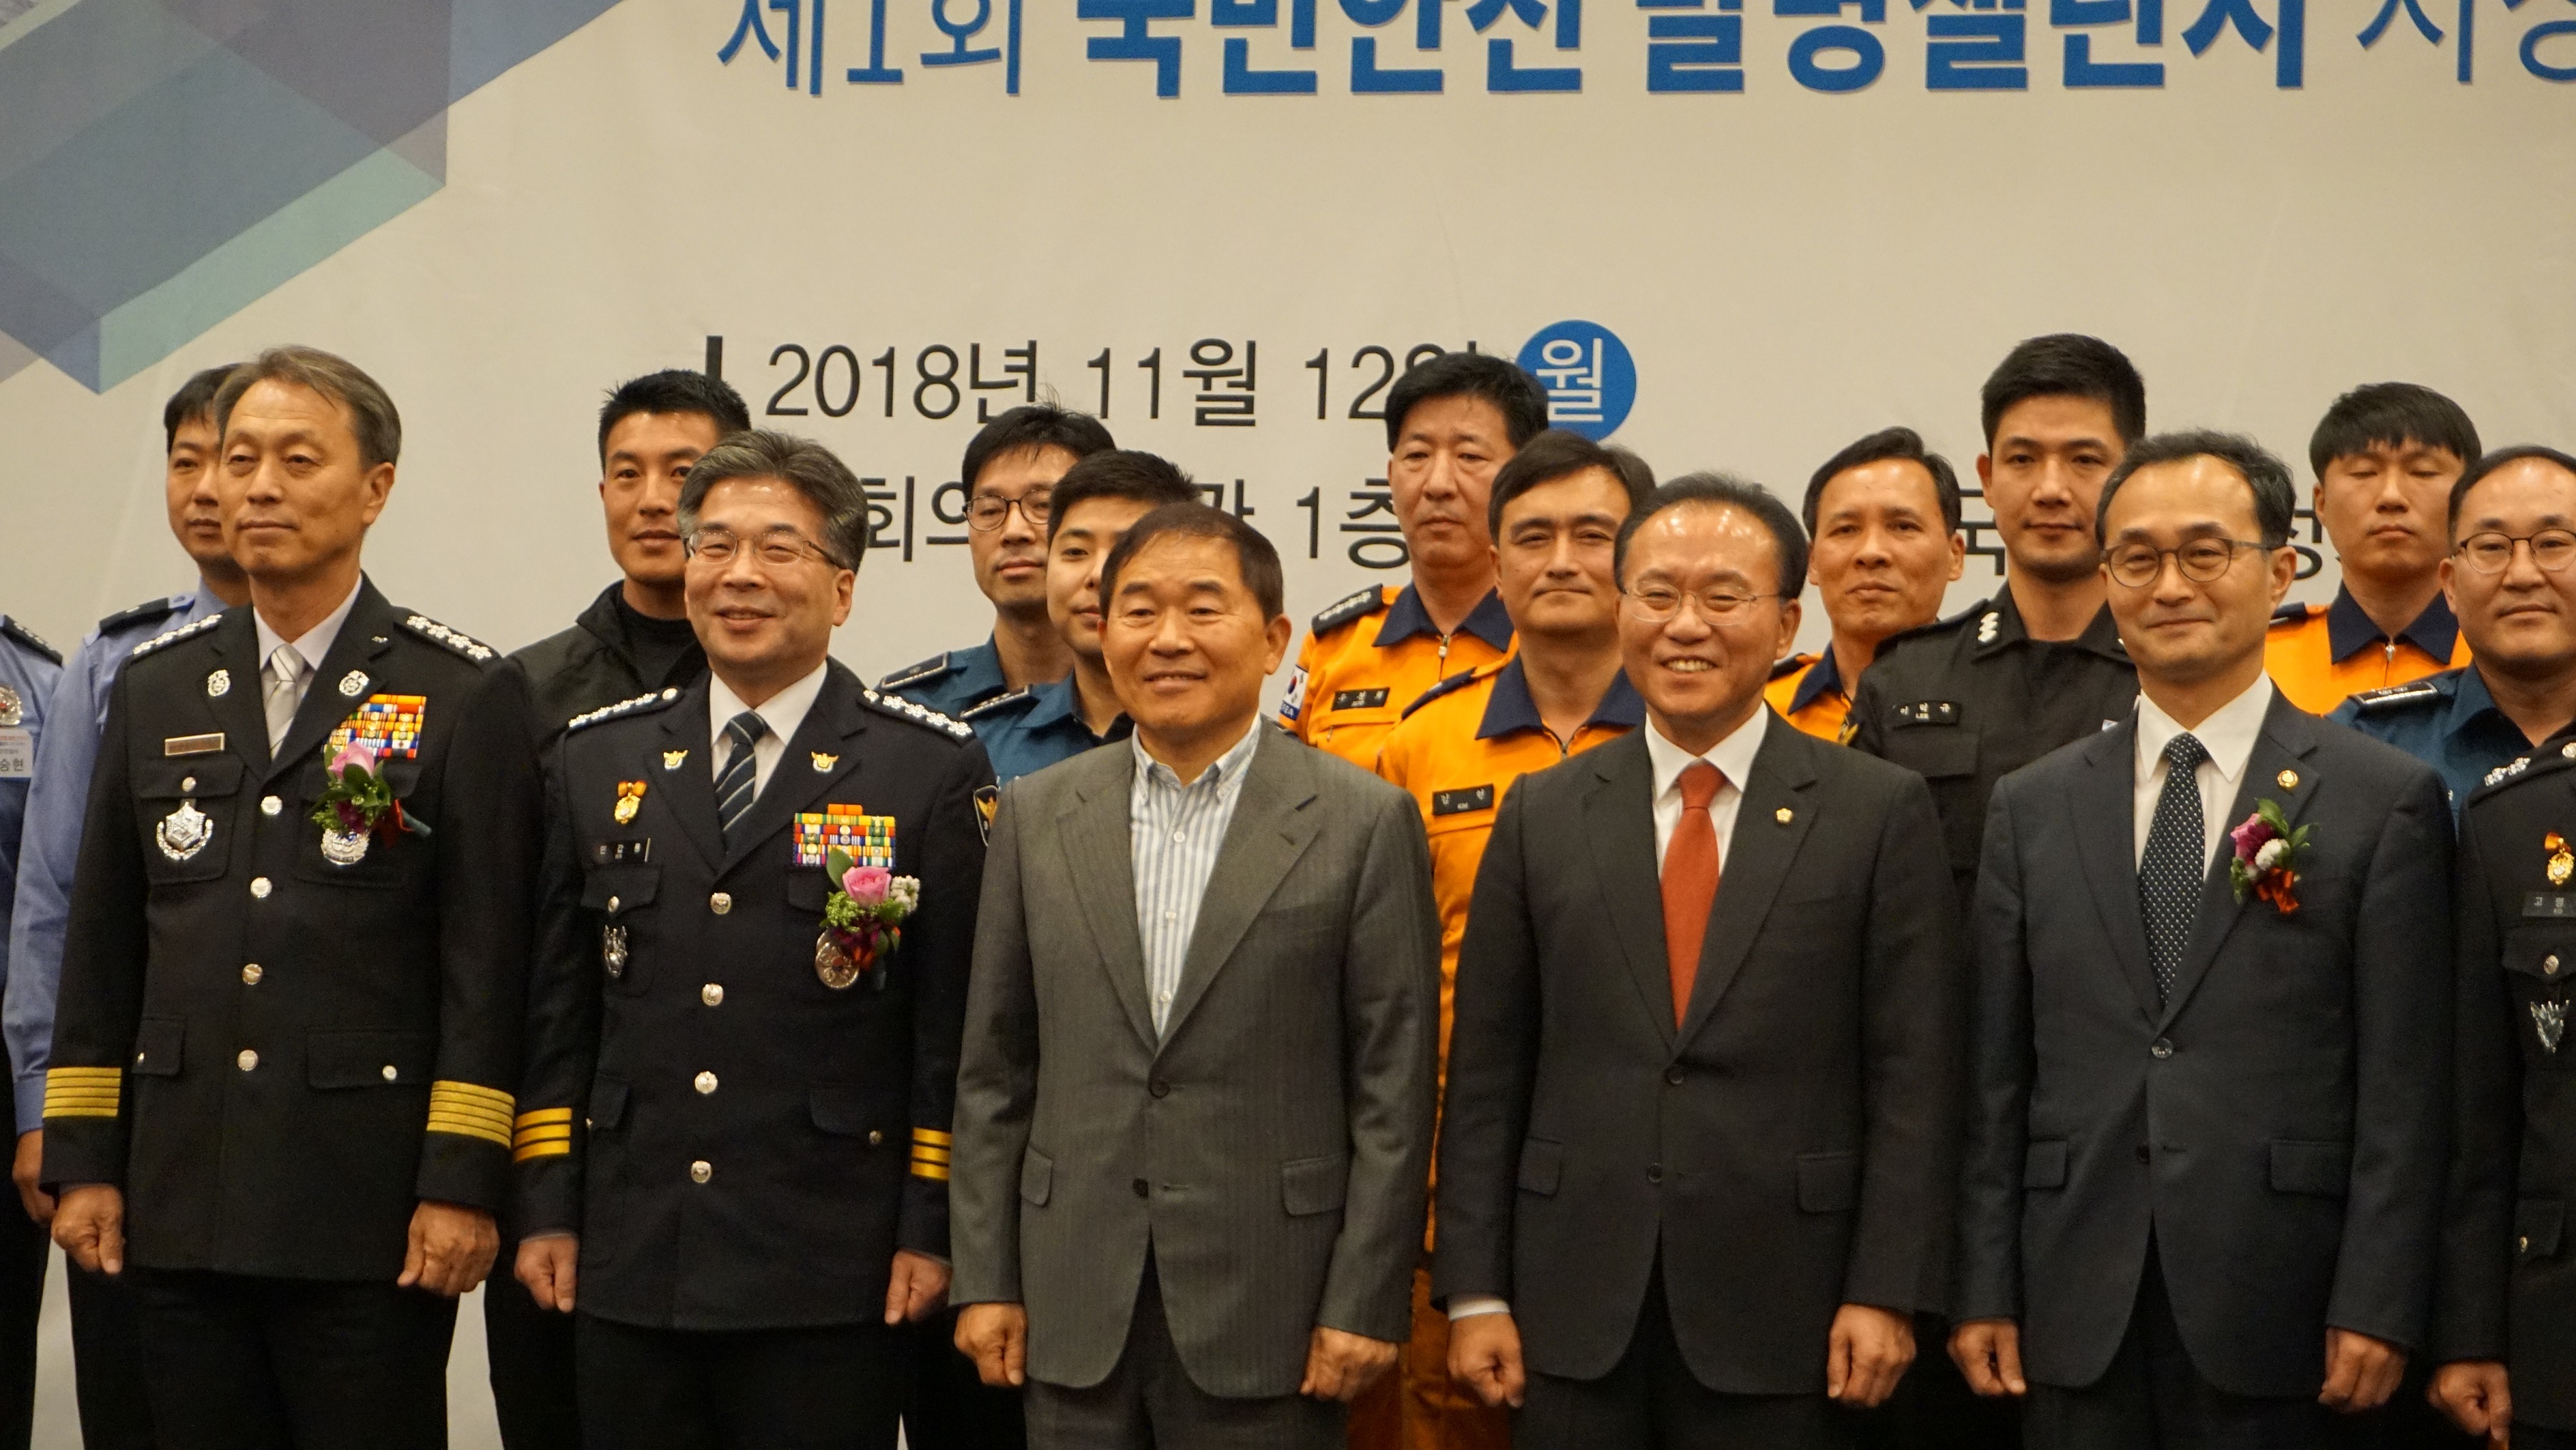 황주홍 농해수위원장, "2018 대한민국 안전산업 발전 컨퍼런스" 개최